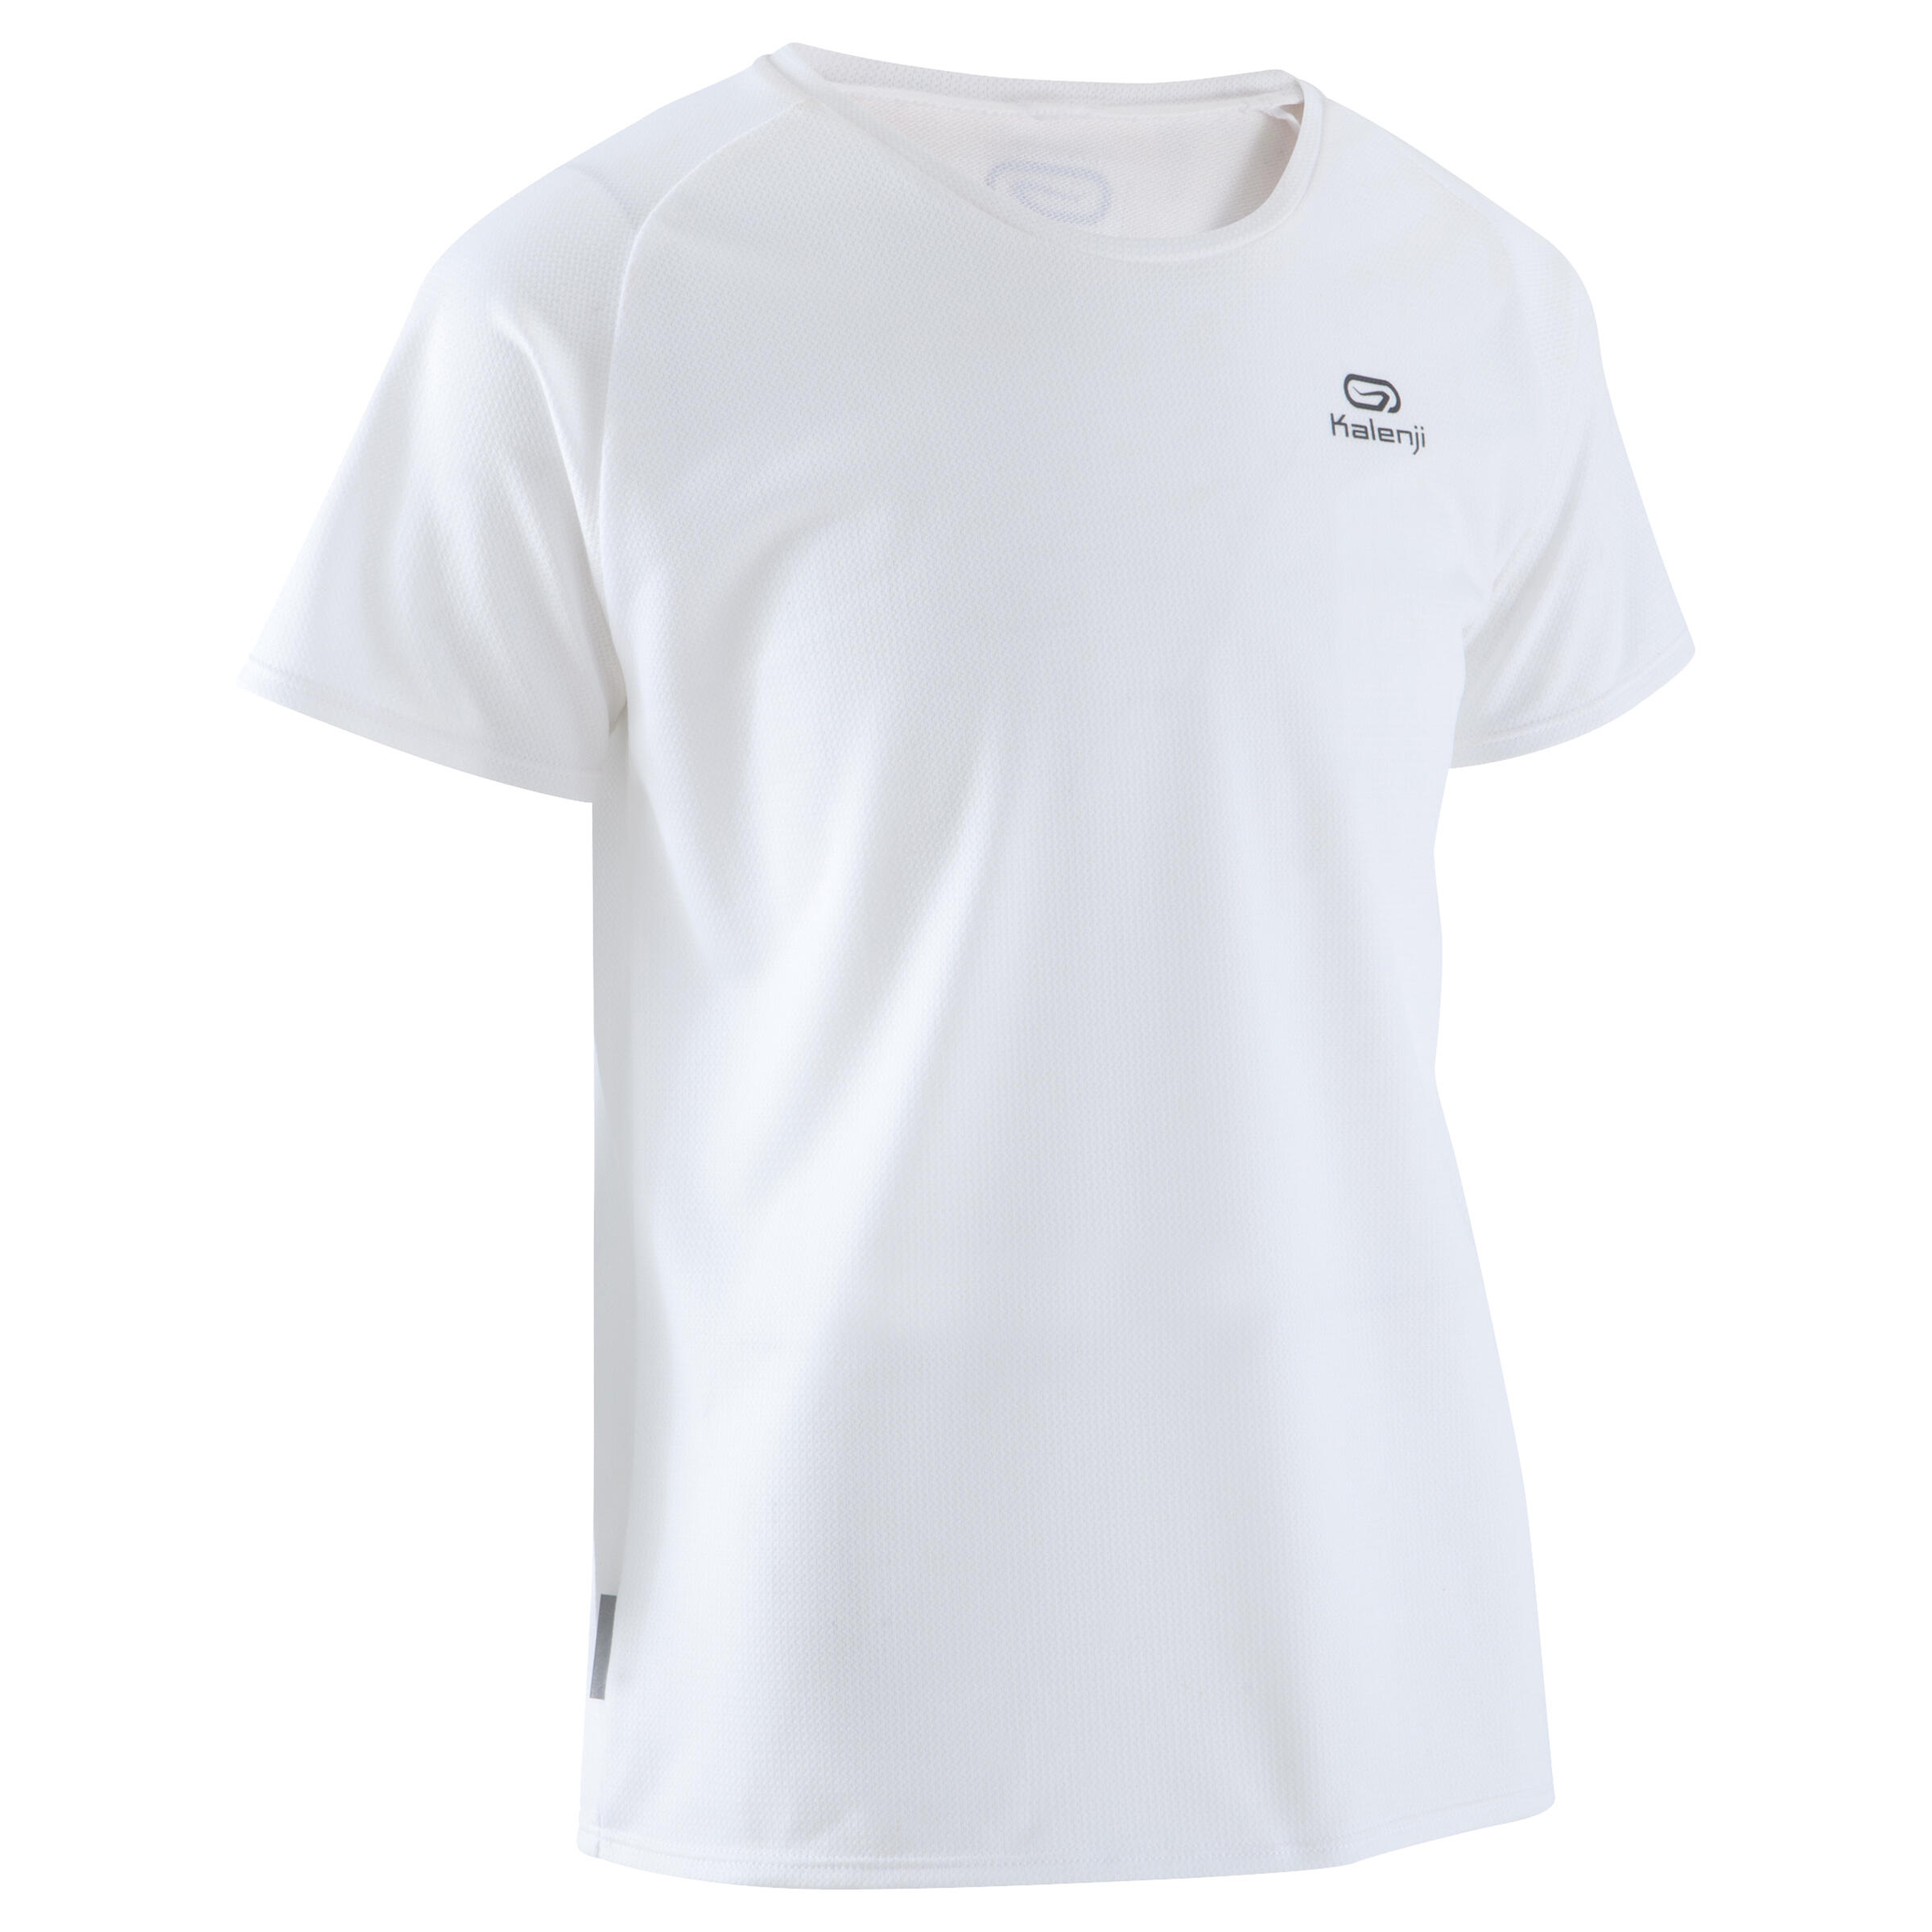 KALENJI Run Dry children's athletics T-shirt - white